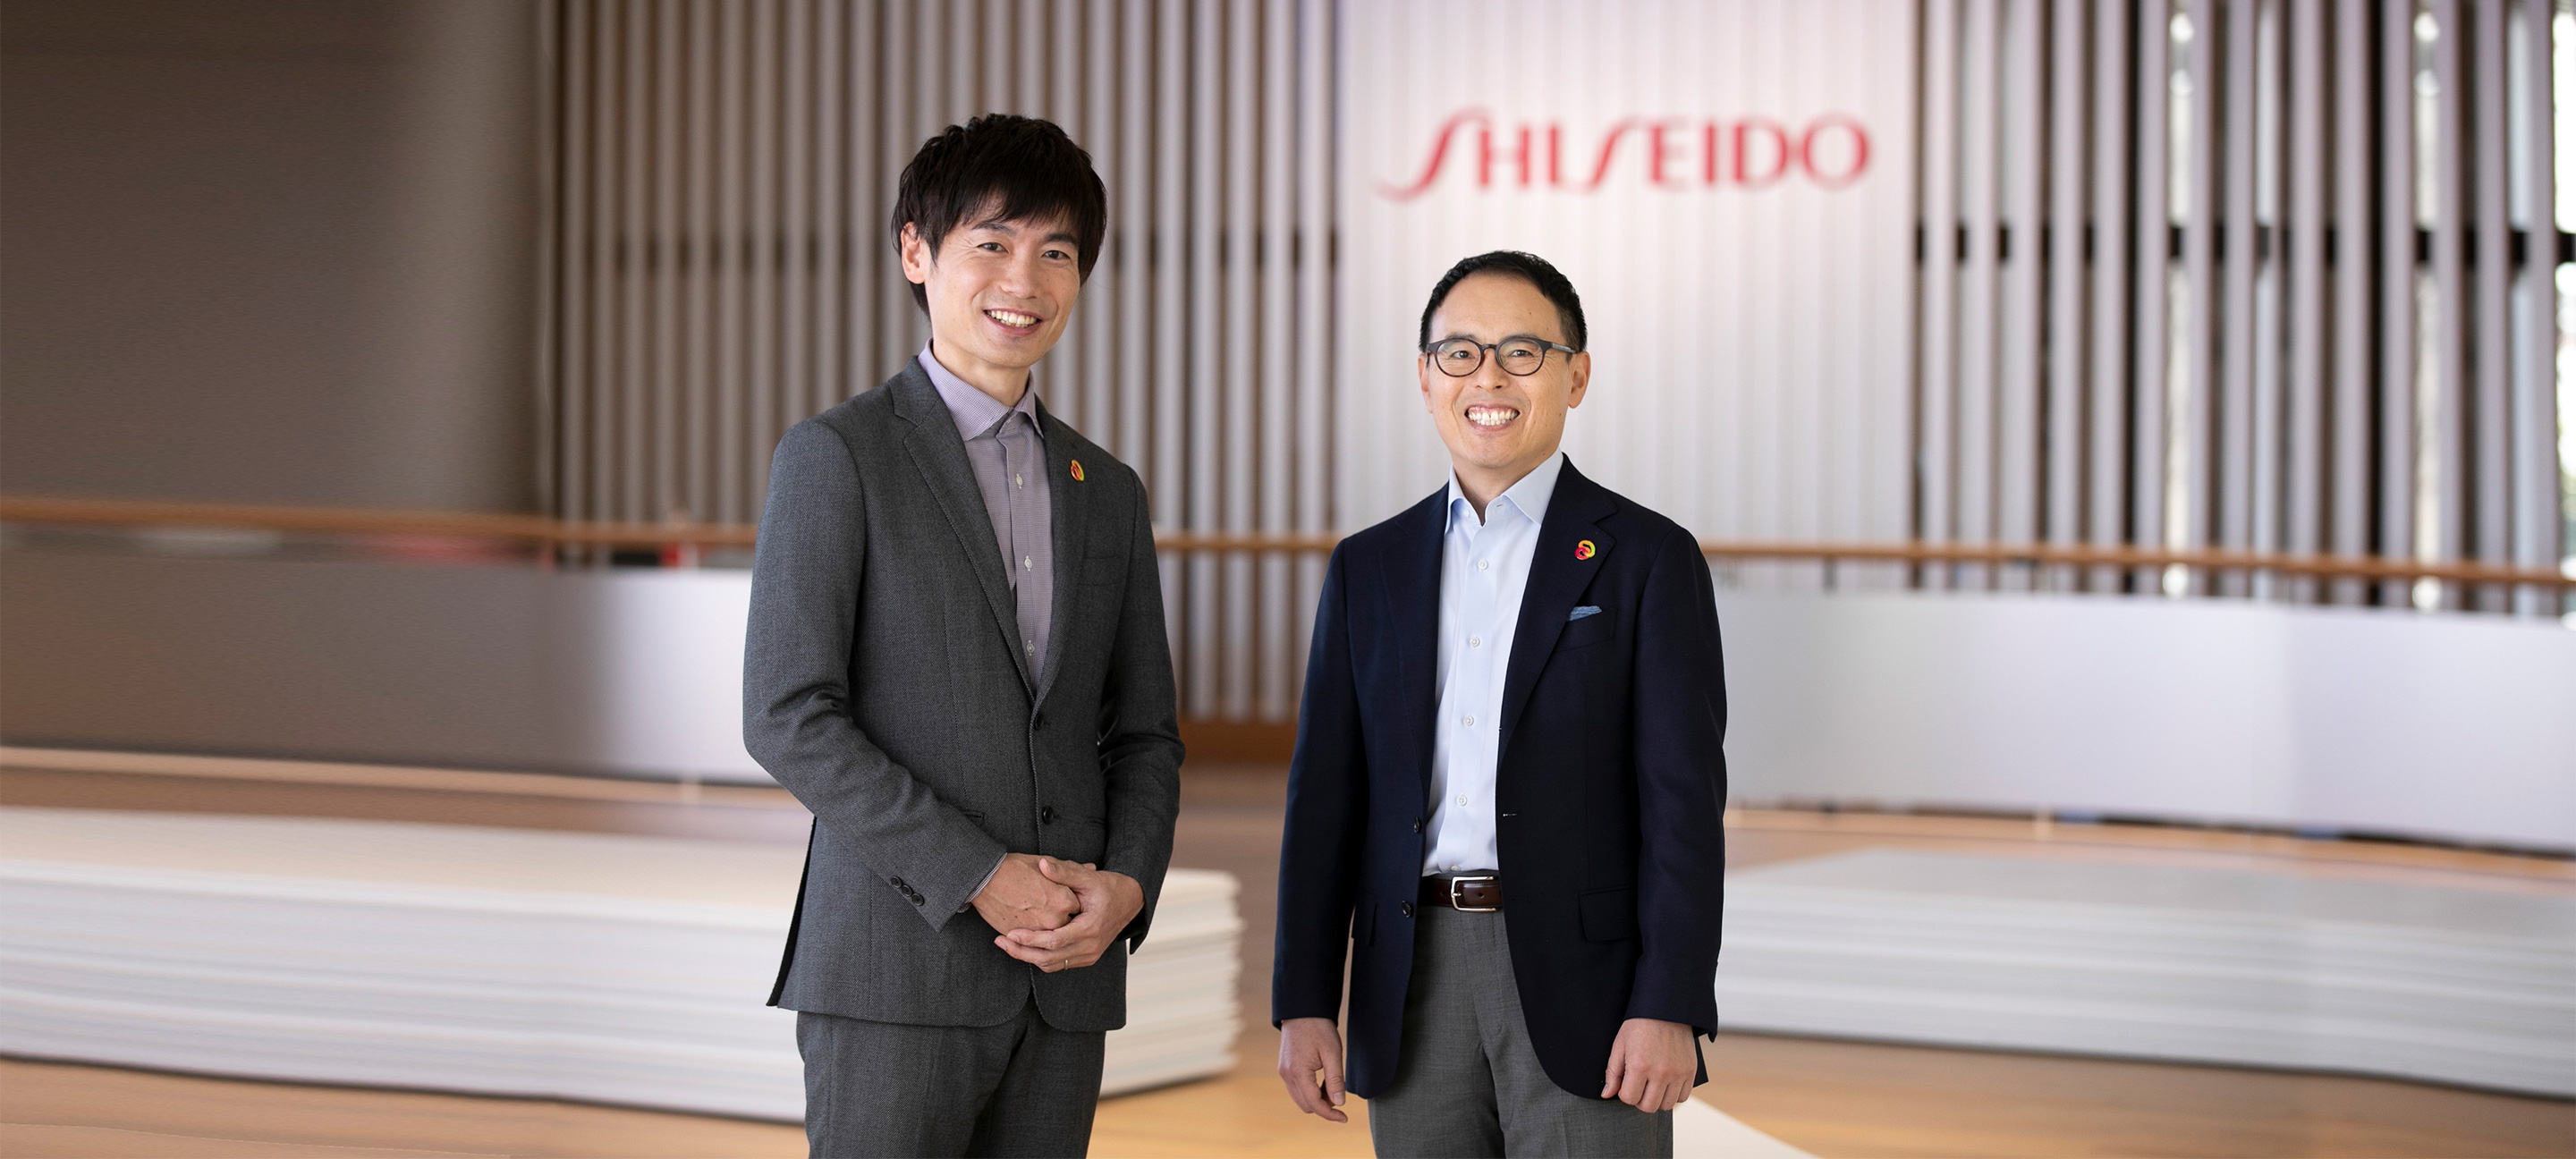 Shiseido Talks